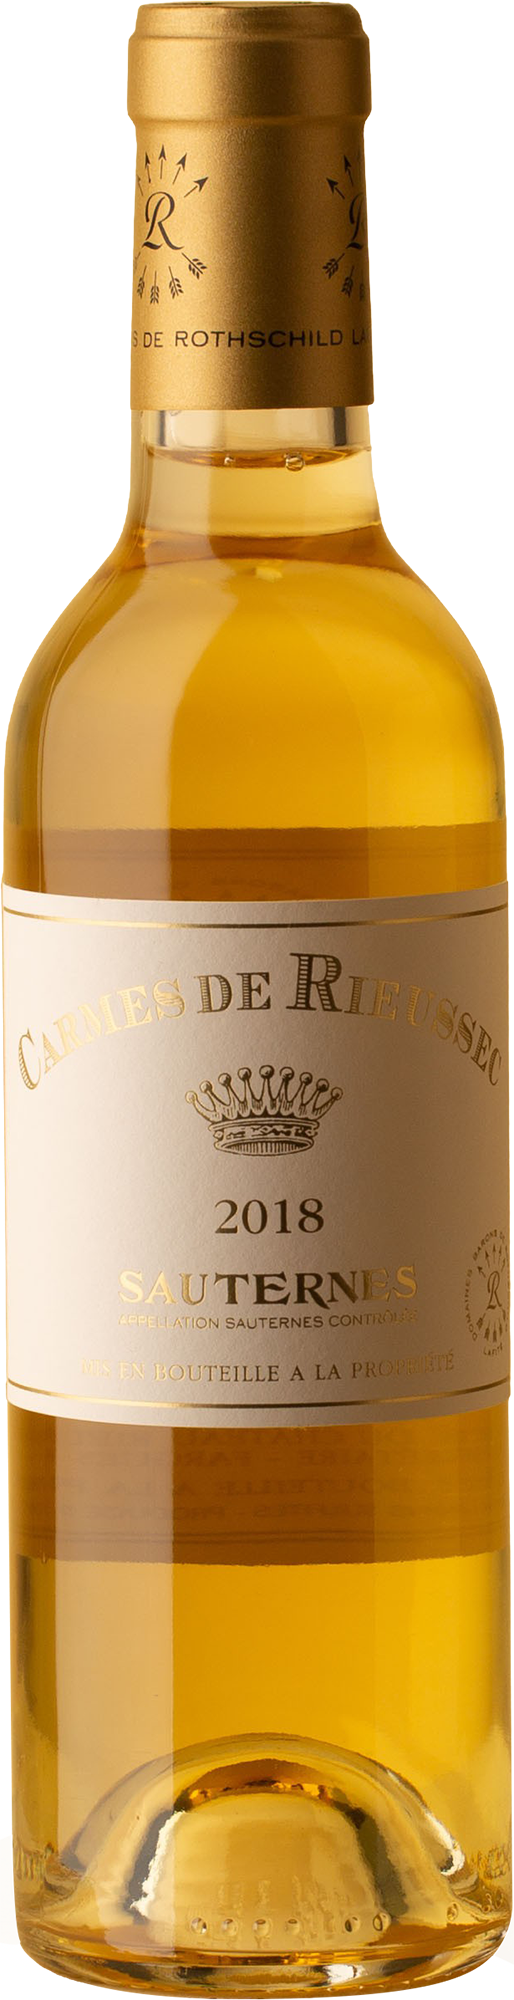 Chateau Rieussec - Sauternes Carmes de Rieussec 375mL 2018 White Wine